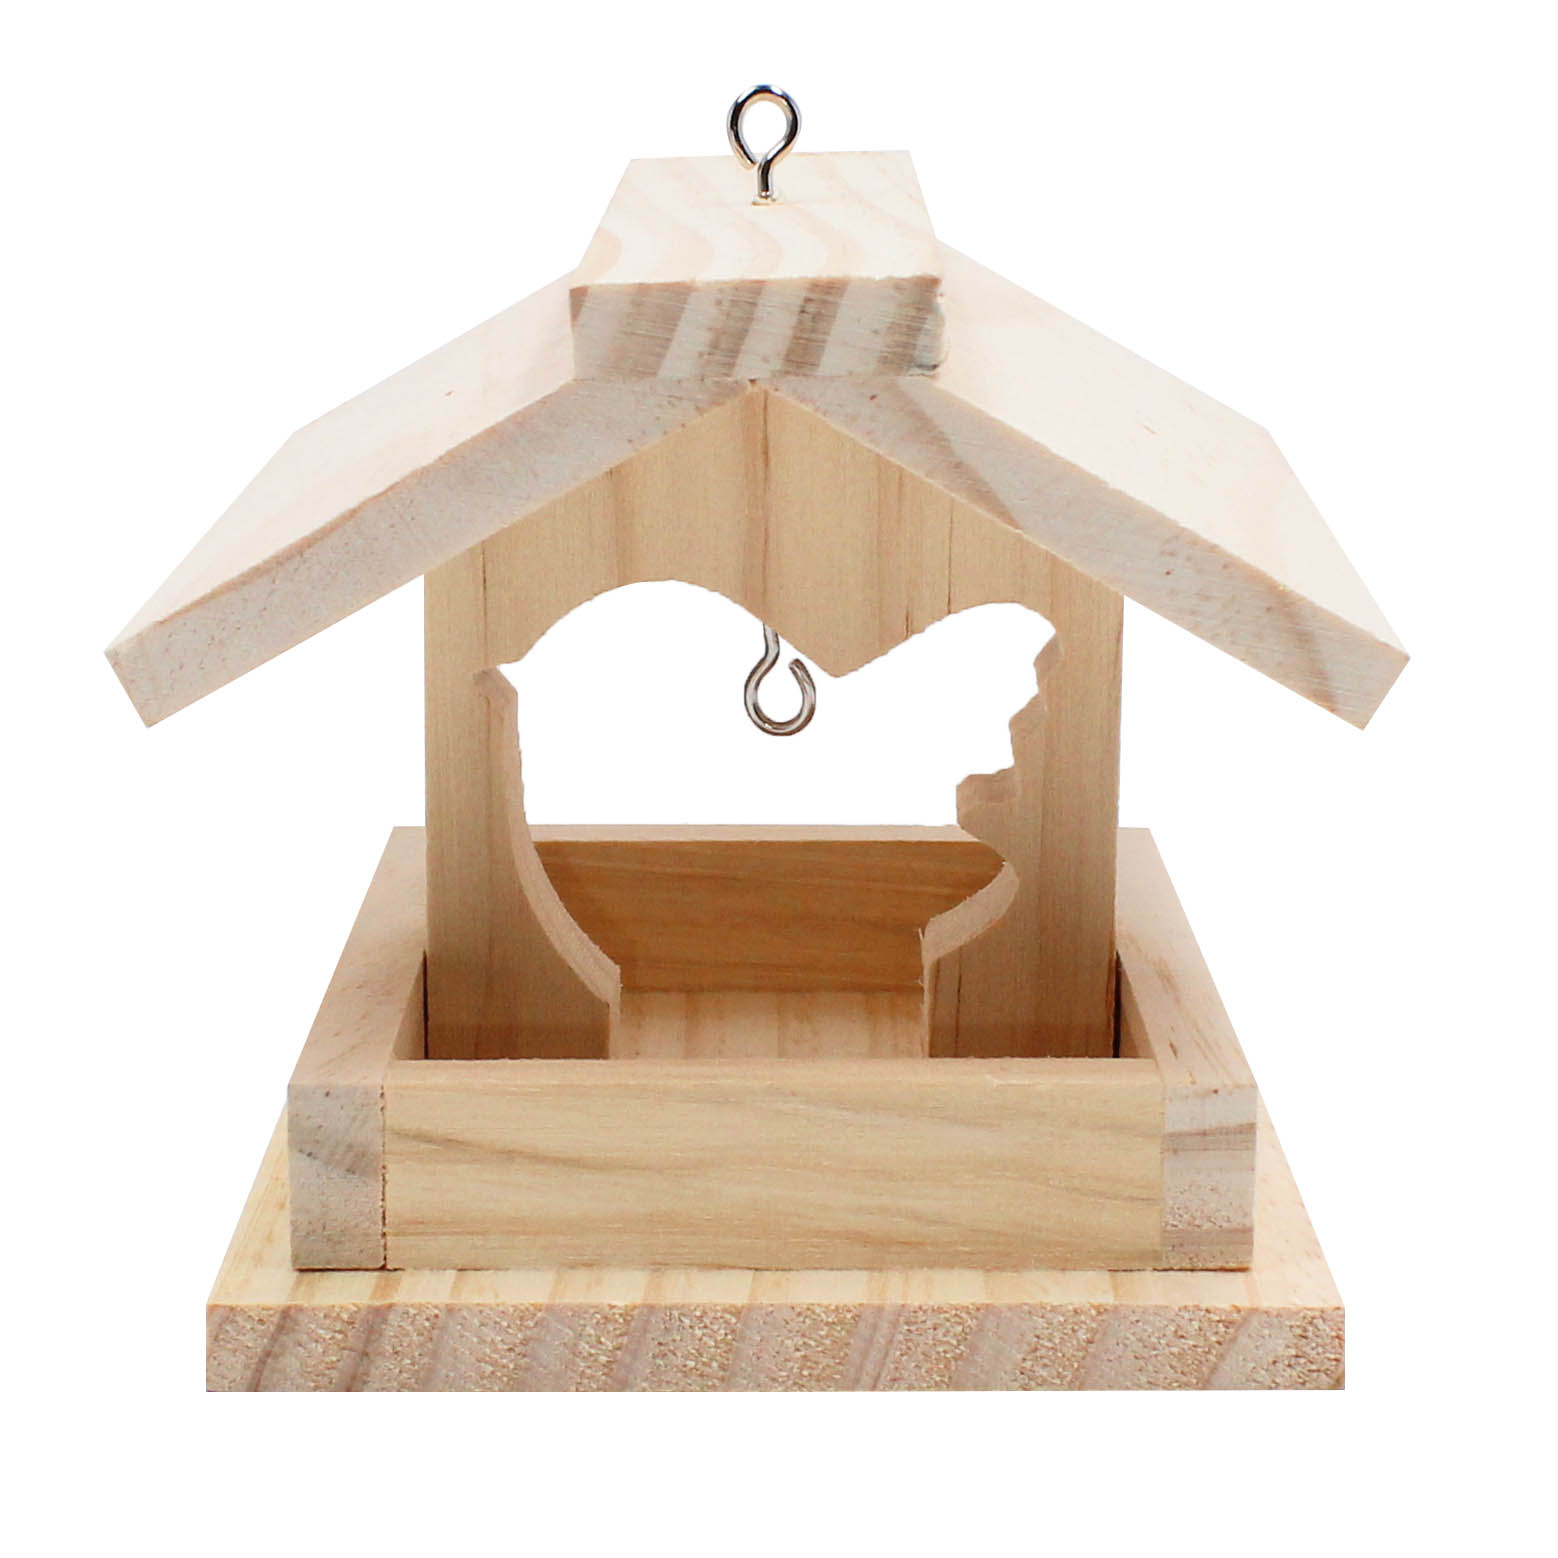 Vogel Futterhäuschen aus Holz -DIY Bausatz